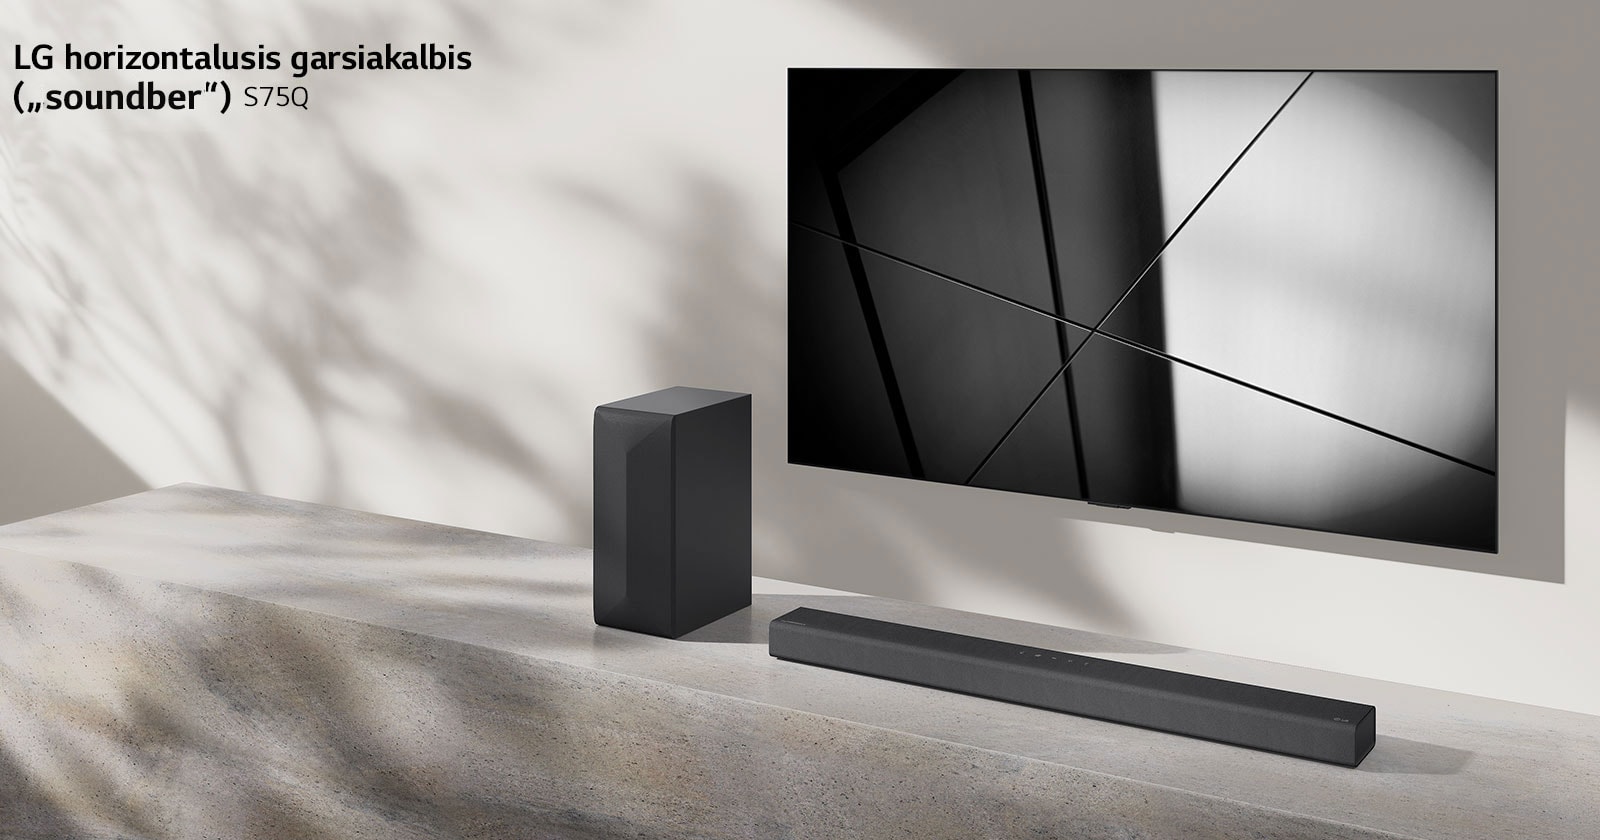 LG horizontalusis garsiakalbis („Sound Bar“) S75Q ir LG televizorius svetainėje pastatyti vienas šalia kito. Televizorius įjungtas, jame rodomas juodos ir baltos spalvų atvaizdas.